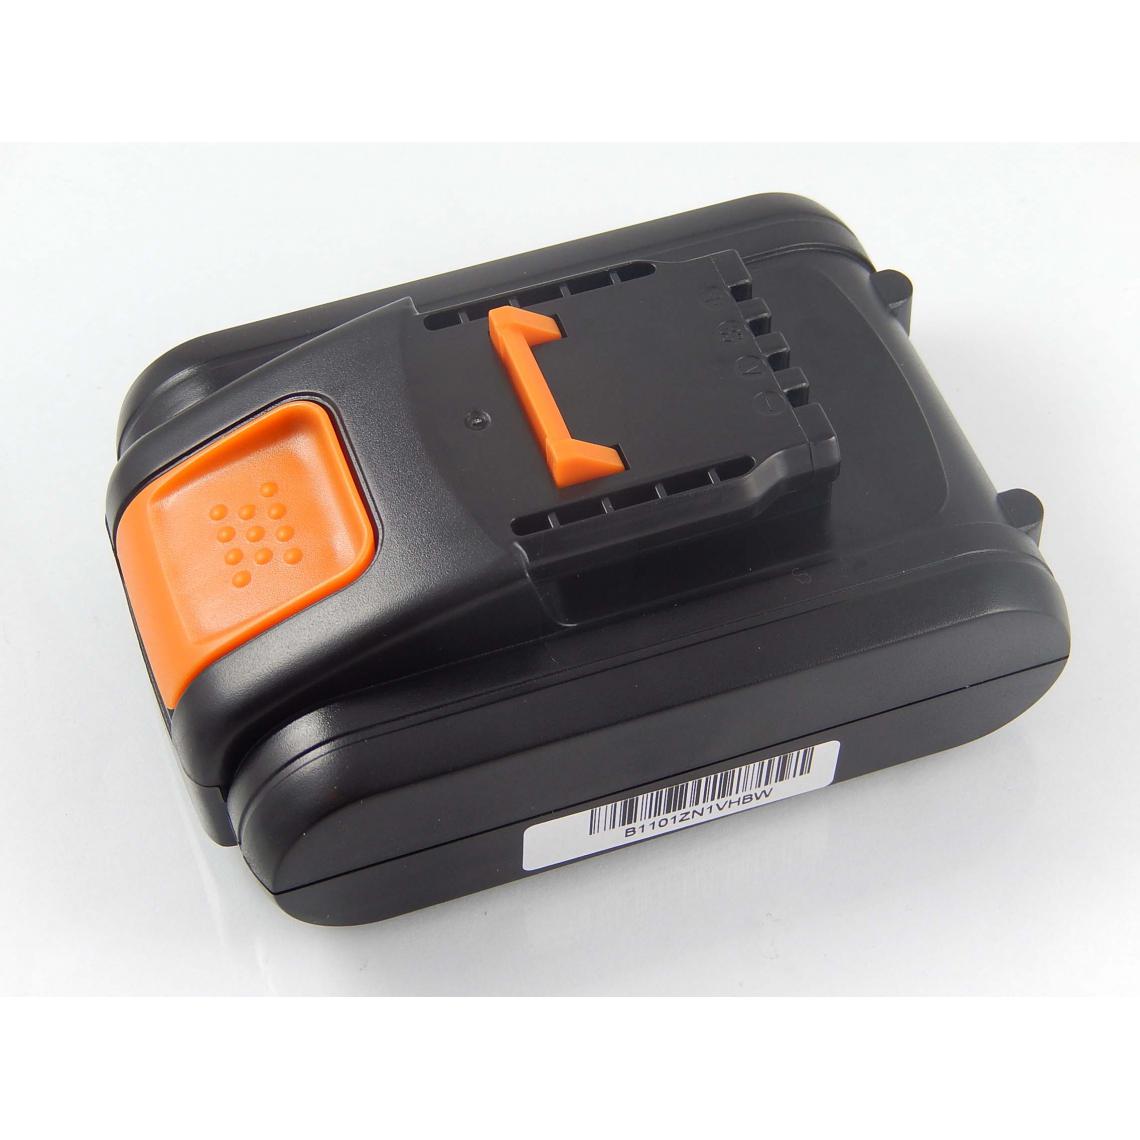 Vhbw - vhbw Batterie compatible avec AL-KO LB 2060 (113537), MB 2010 (113696), WR 2000 (113631) outil électrique (2000mAh Li-ion 20 V) - Clouterie